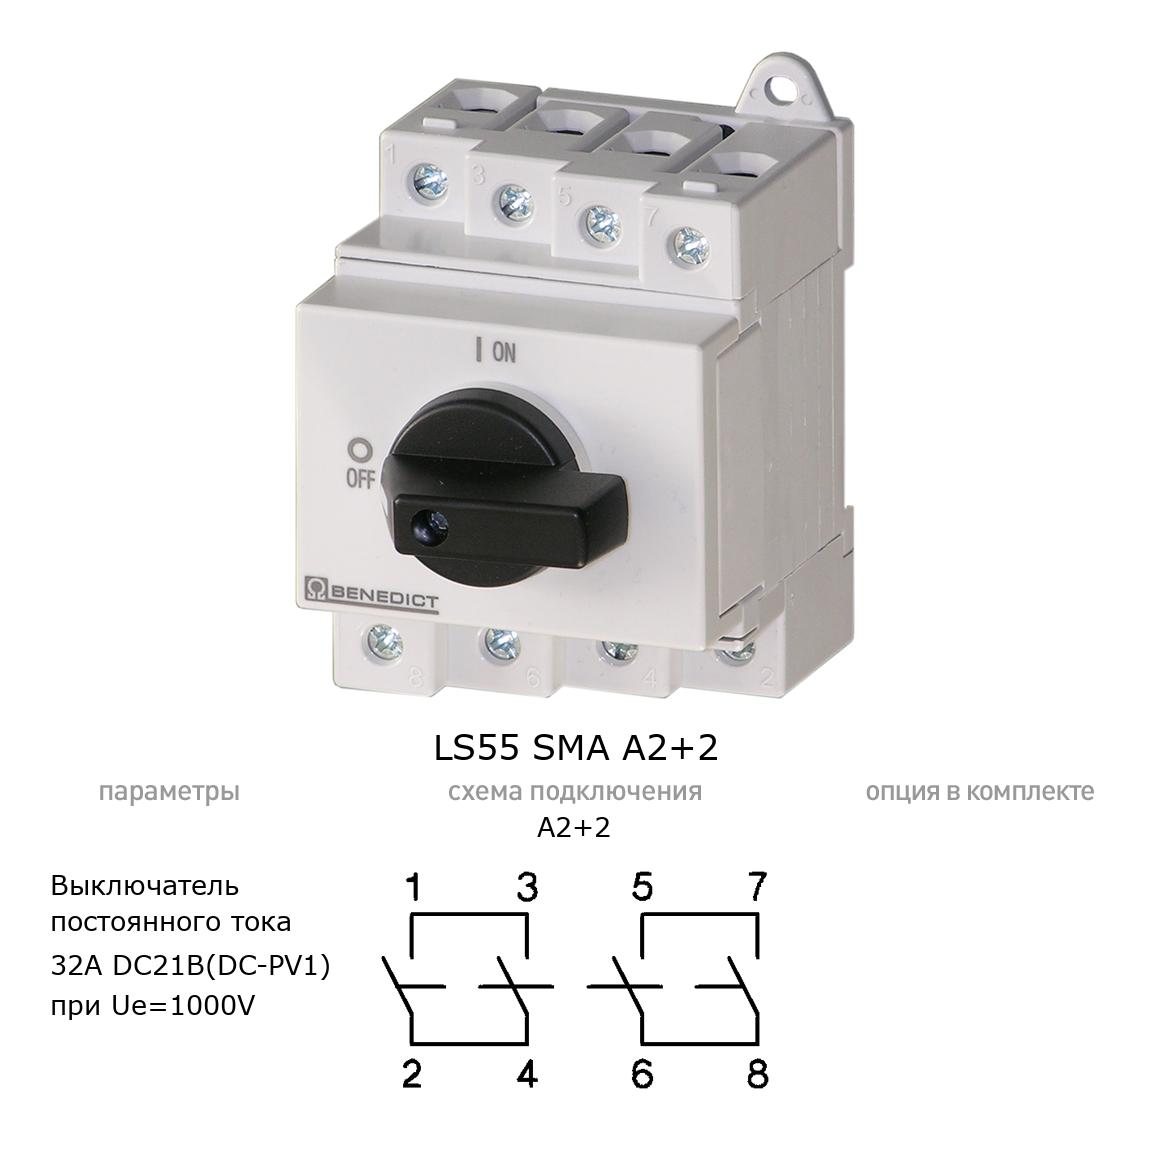 Кулачковый переключатель для постоянного тока (DC) LS55 SMA A2+2 BENEDICT